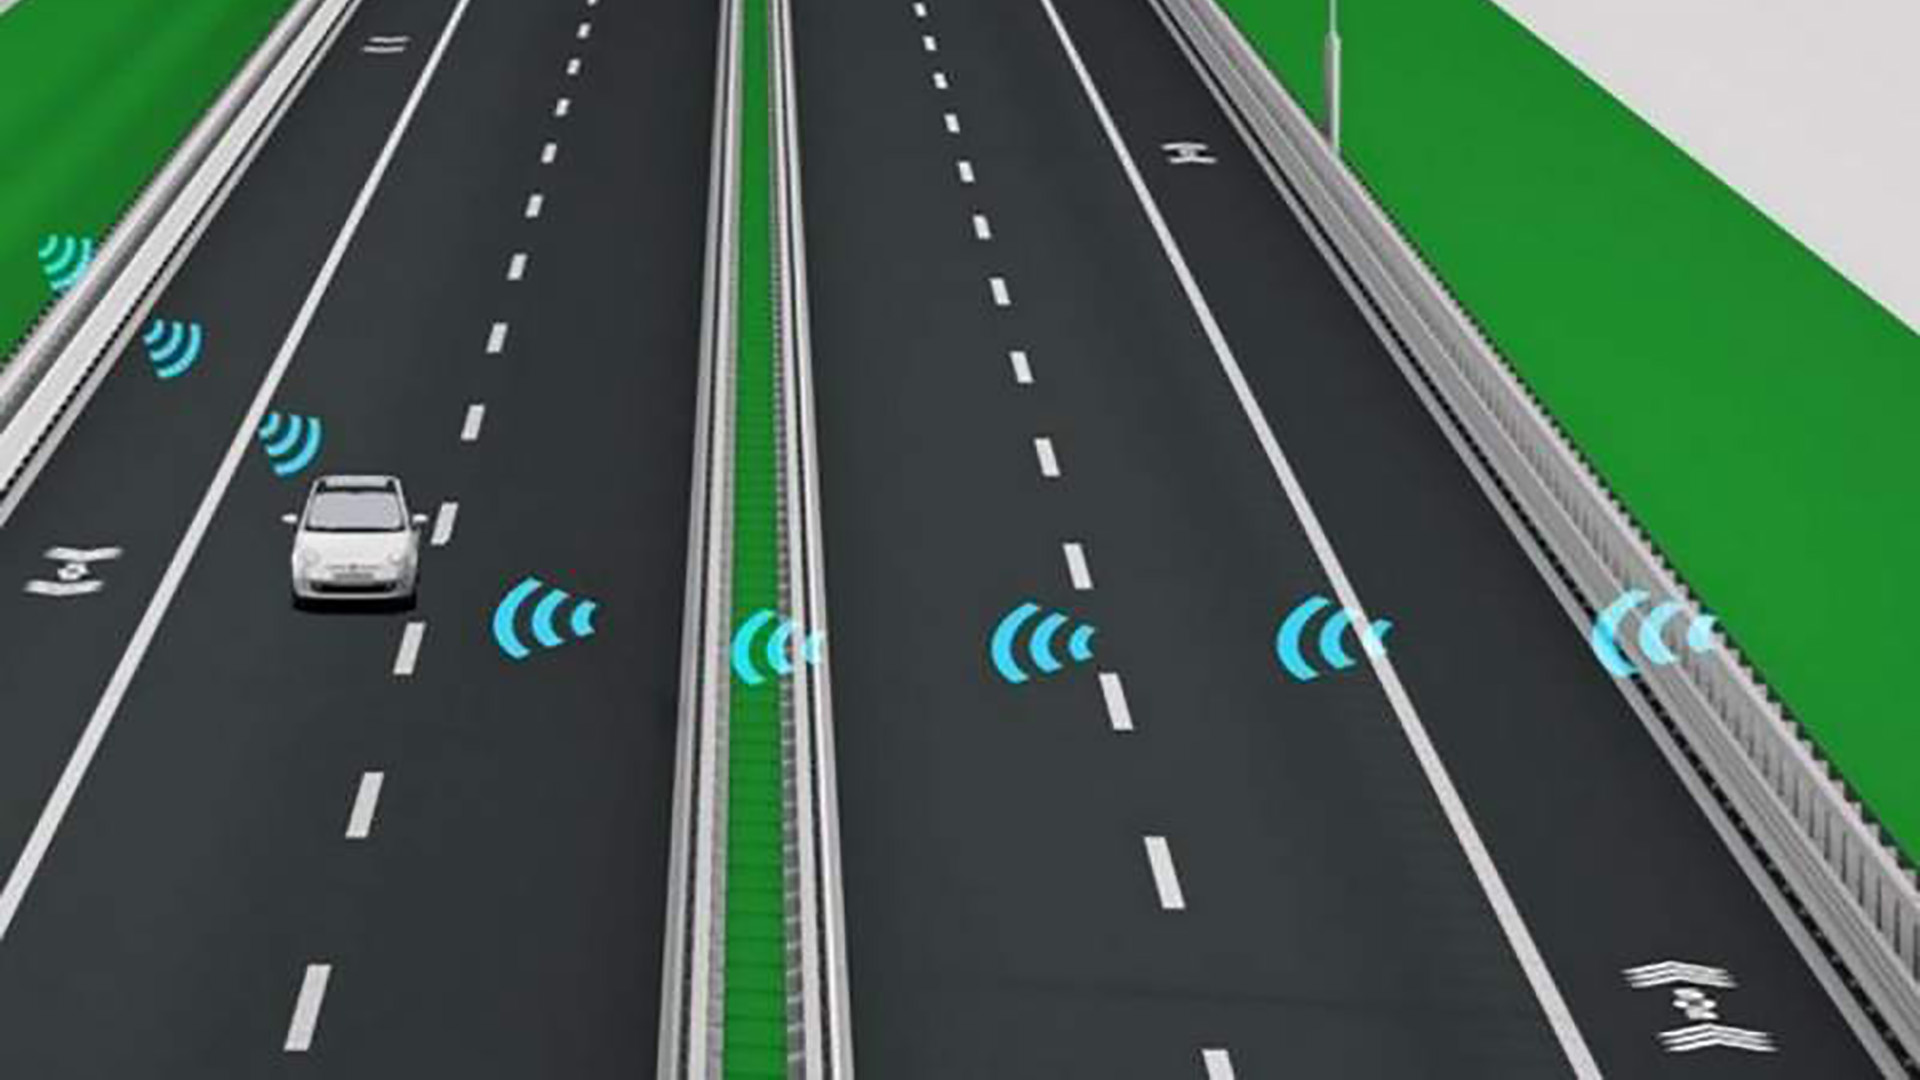 “Con piloto automático”: así es la primera autopista inteligente, ecológica y conectada de Italia